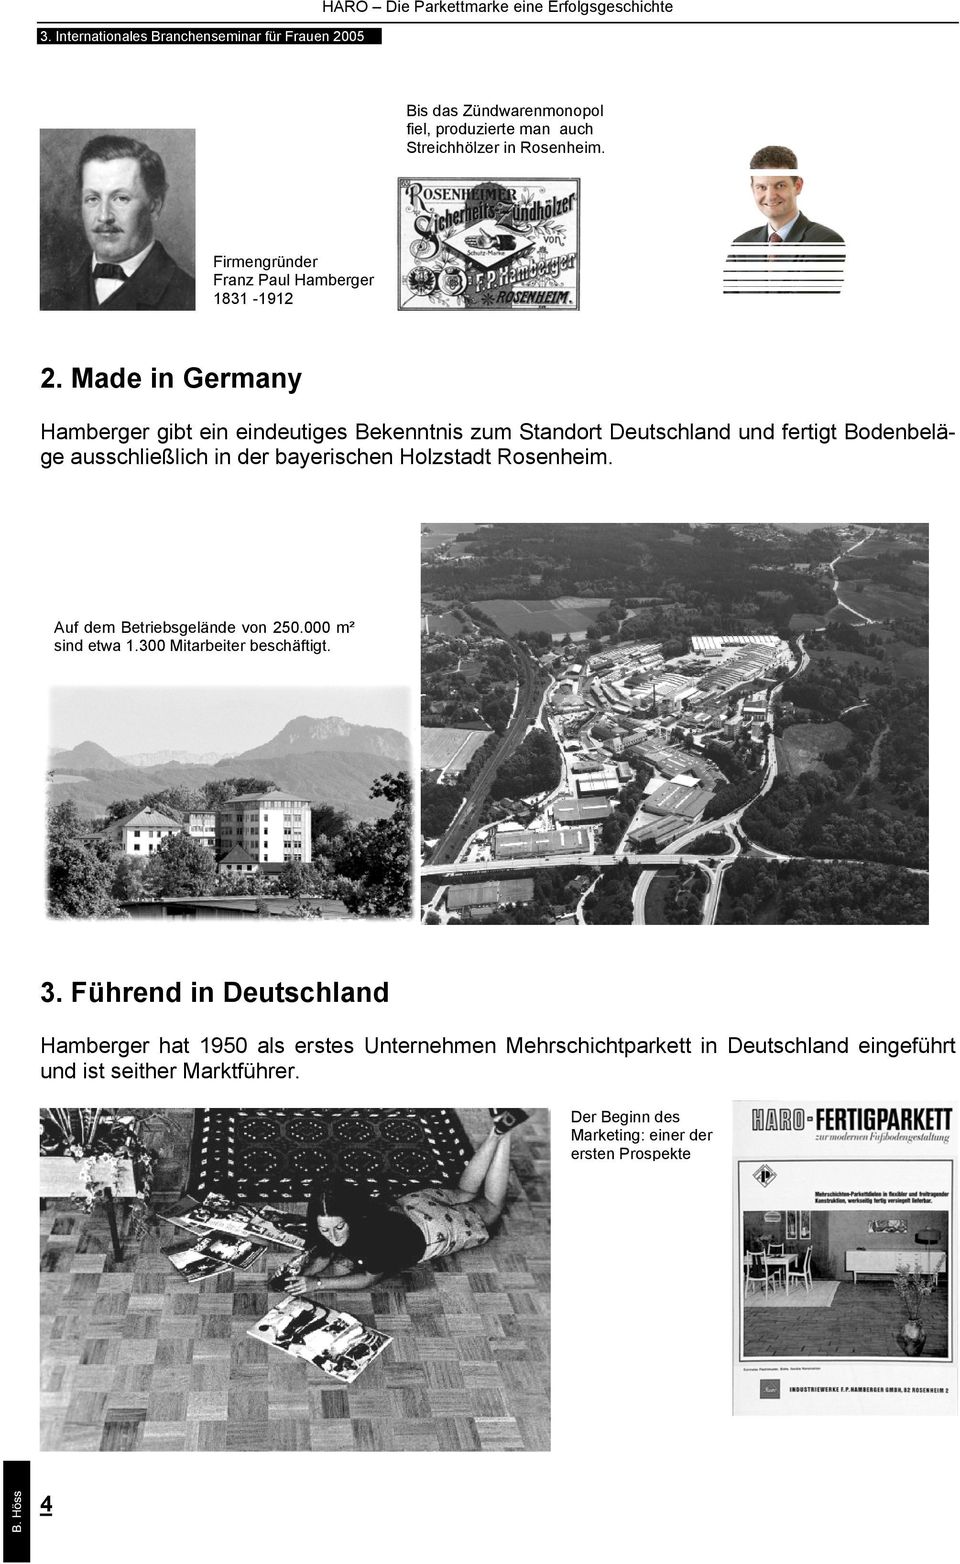 Holzstadt Rosenheim. Auf dem Betriebsgelände von 250.000 m² sind etwa 1.300 Mitarbeiter beschäftigt. 3.